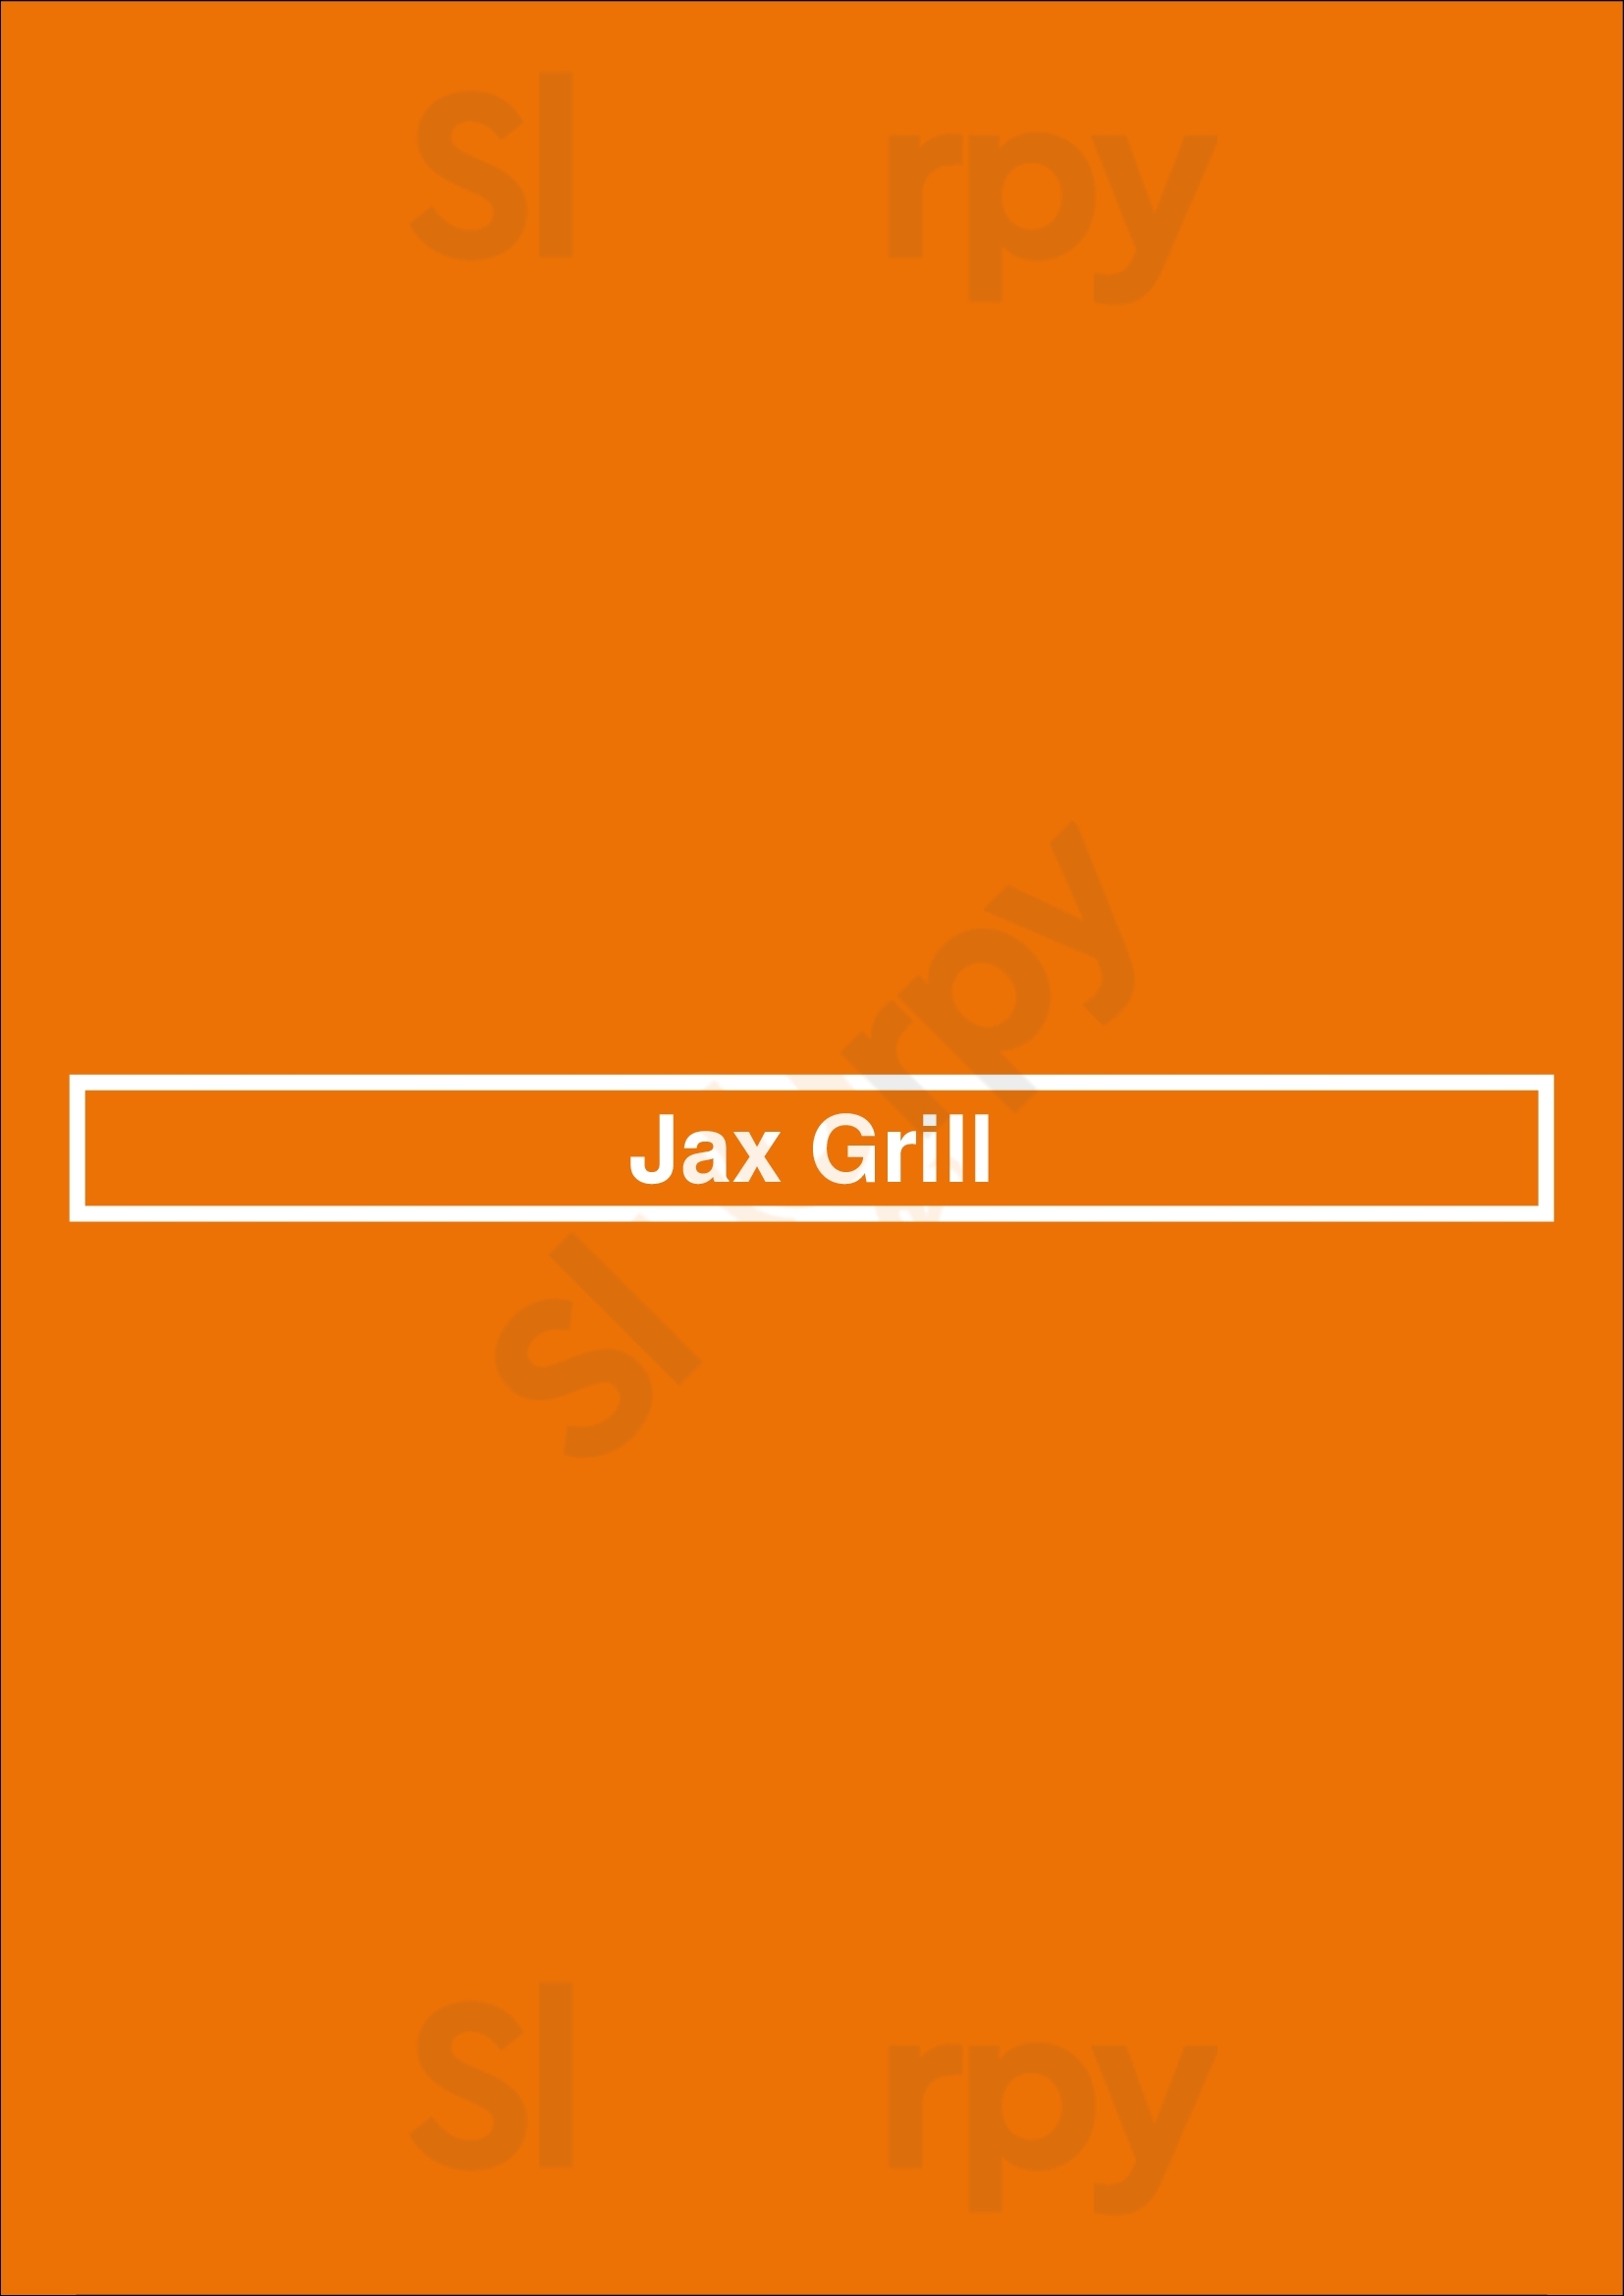 Jax Grill Houston Menu - 1